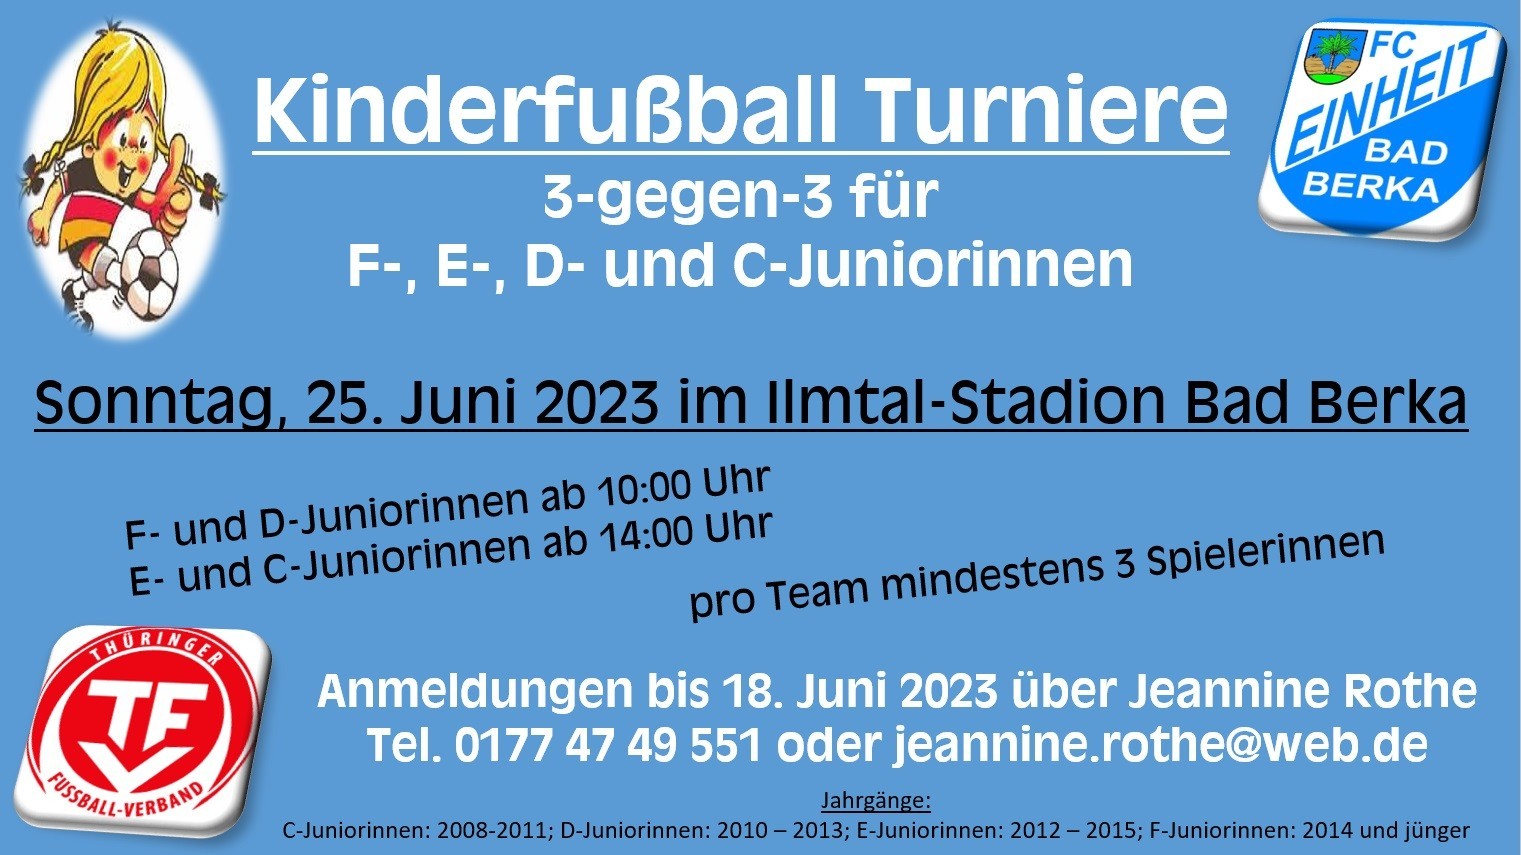 Kinderfußball-Turniere für Mädchenteams in Bad Berka